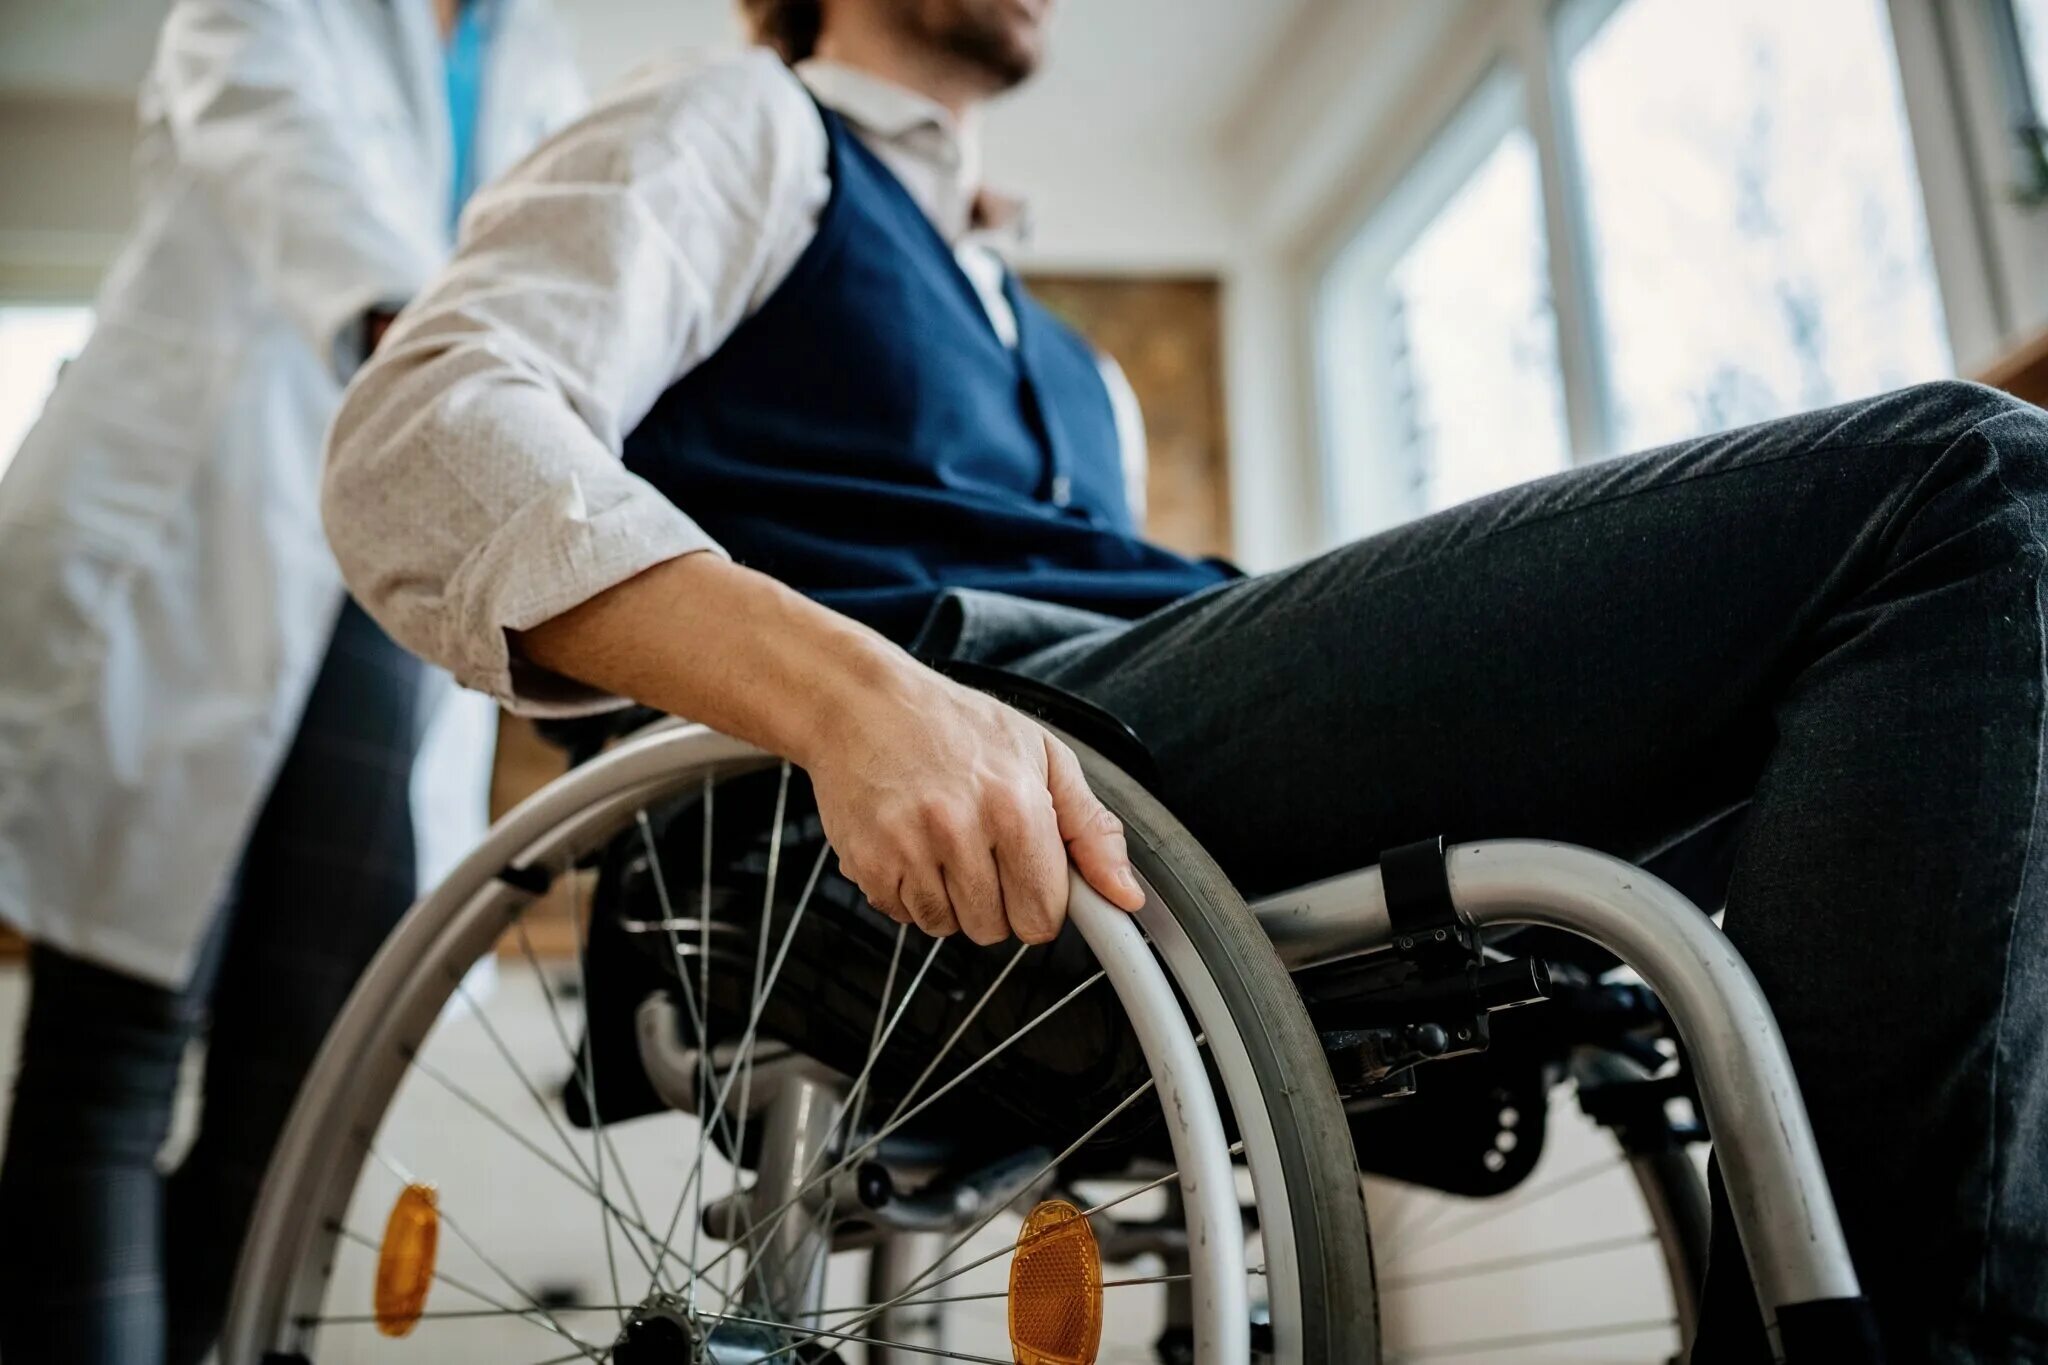 Муж инвалид хочет. Мужчины с инвалидностью. Бытовая инвалидность мужчин. Парень в инвалидной коляске за компьютером. Инвалид мужчина за рабочим столом.